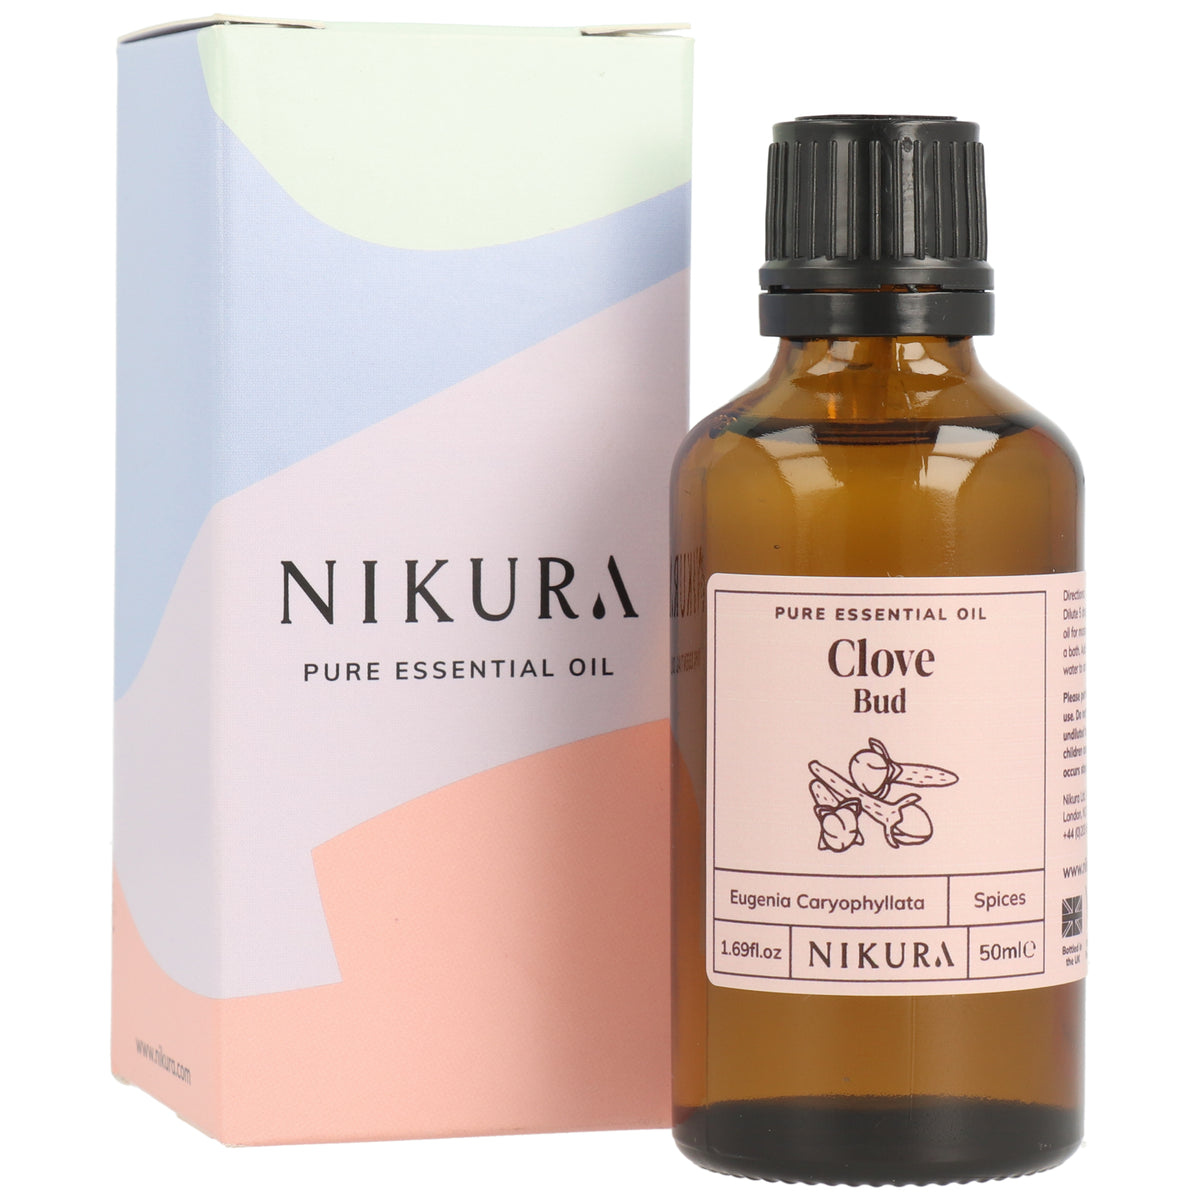 Ethereal Nature 100% Pure Oil, Cinnamon, 1.01 Fluid Ounce